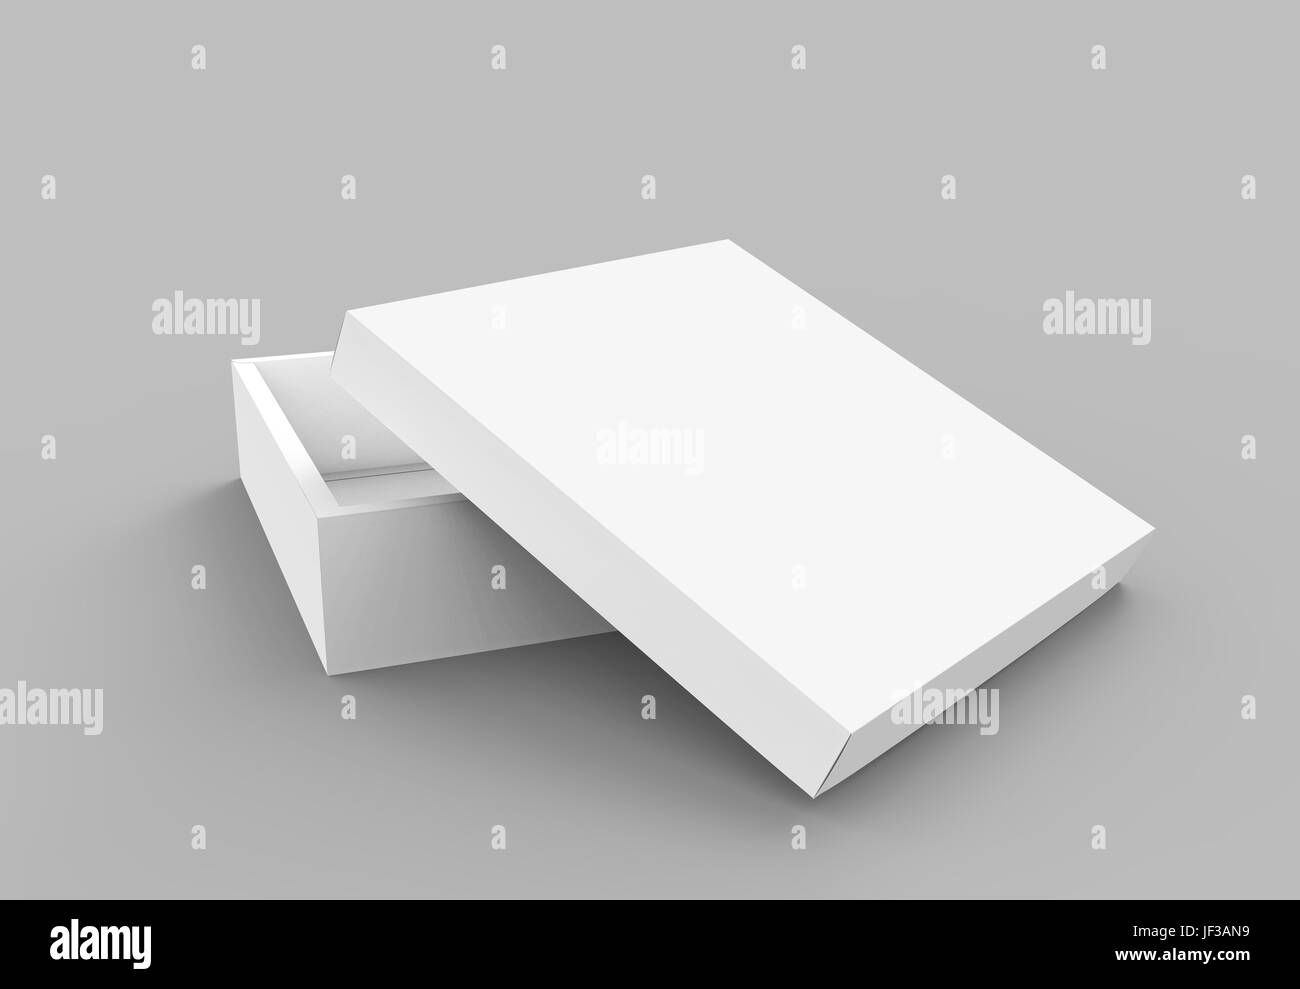 Rendu 3D télévision vide spun ouvrir légèrement la boîte carrée blanc vide avec couvercle séparé, isolé fond gris elevated view Banque D'Images